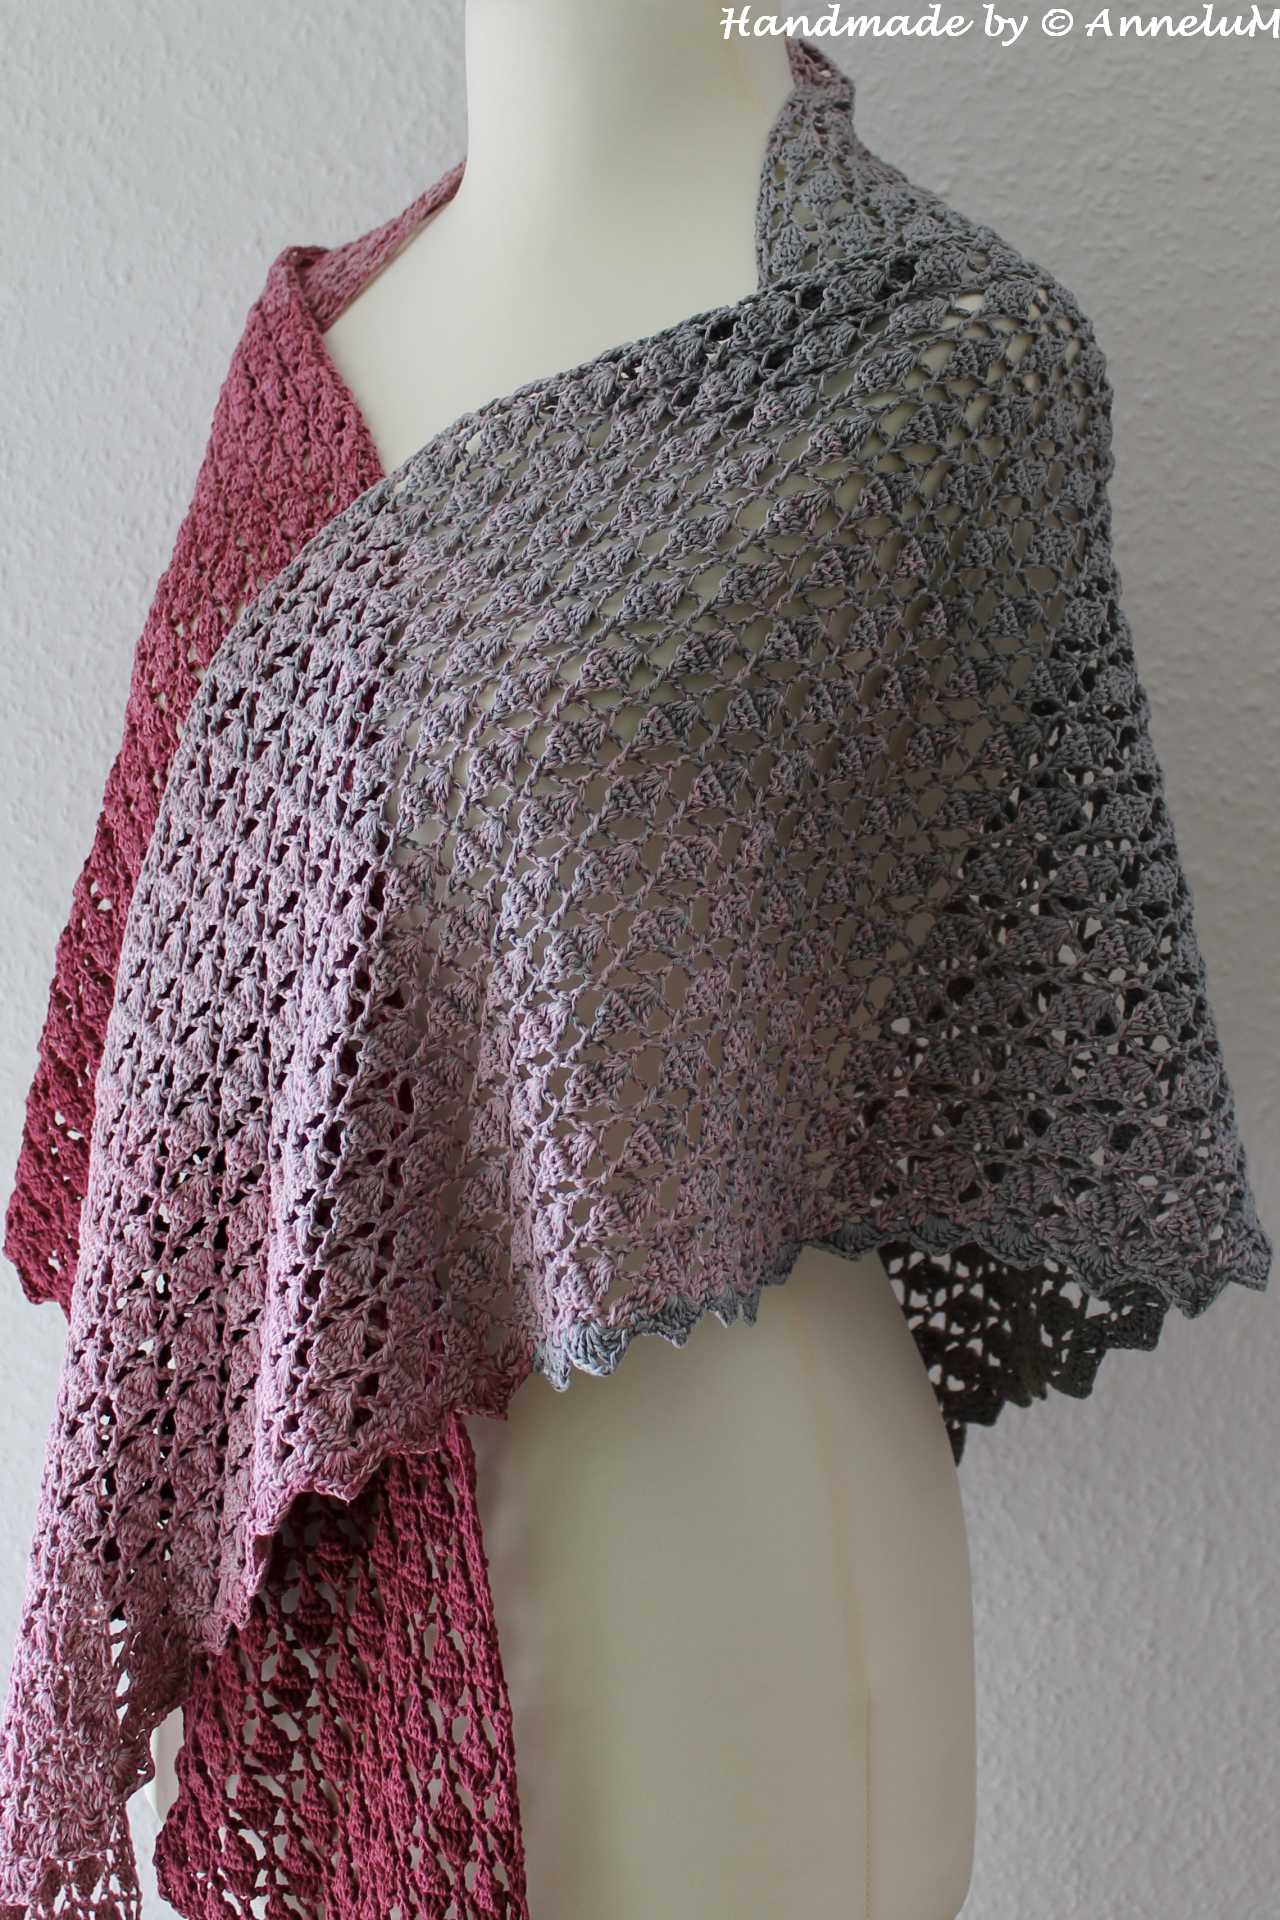 Dragon Scale Tuch in grau-lila das Muster wie eine Drachenhaut.